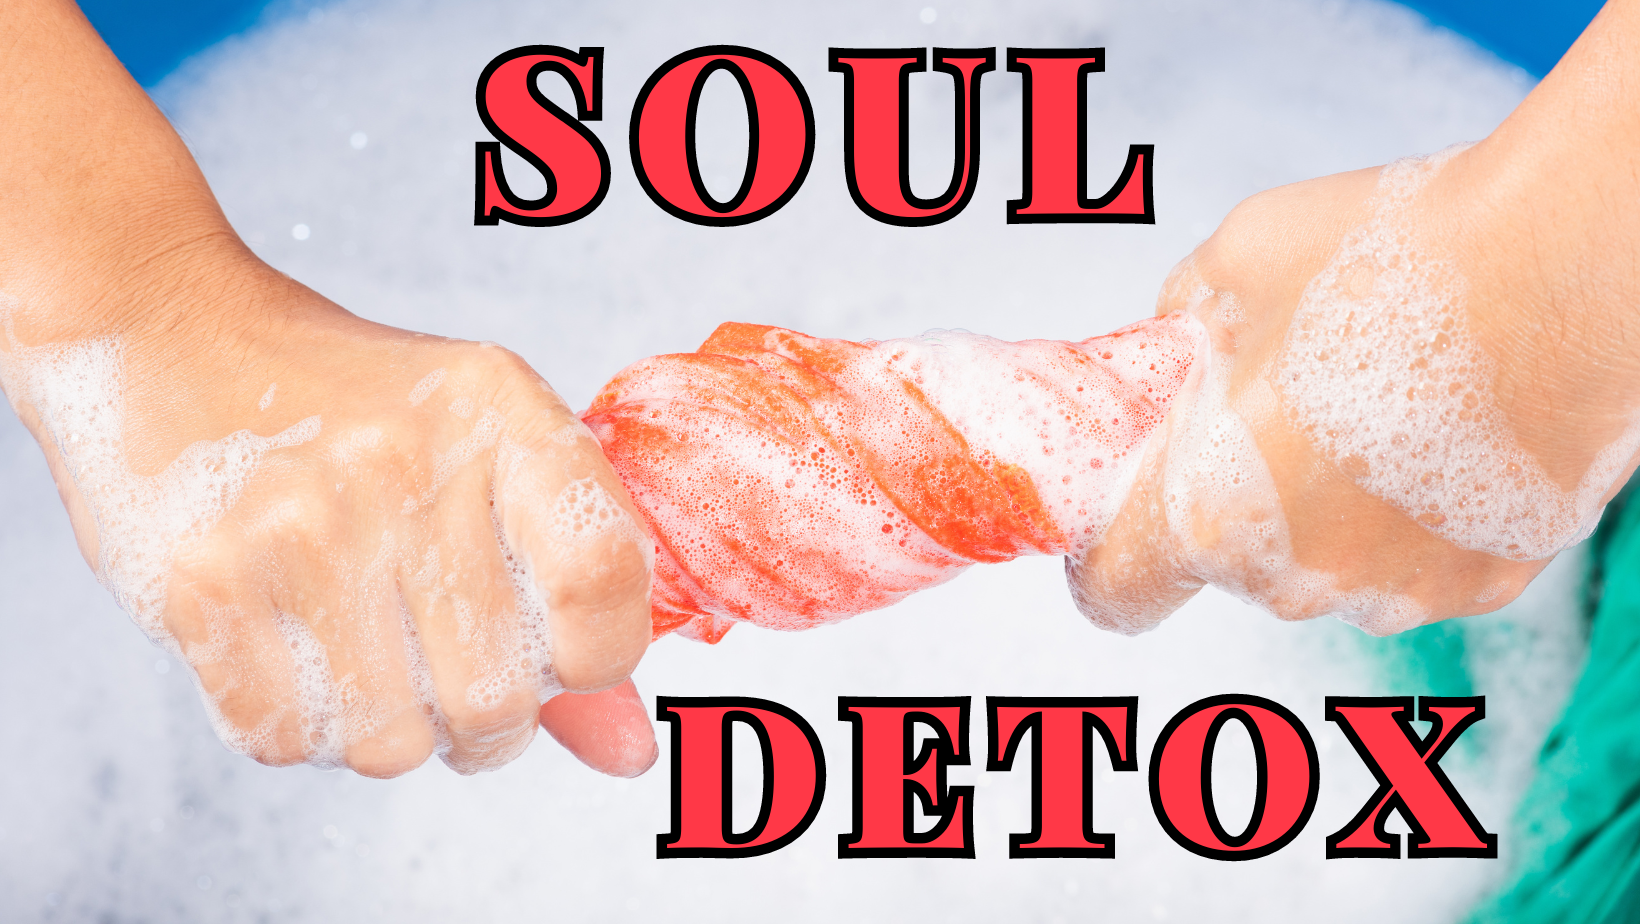 Soul Detox- Eyes